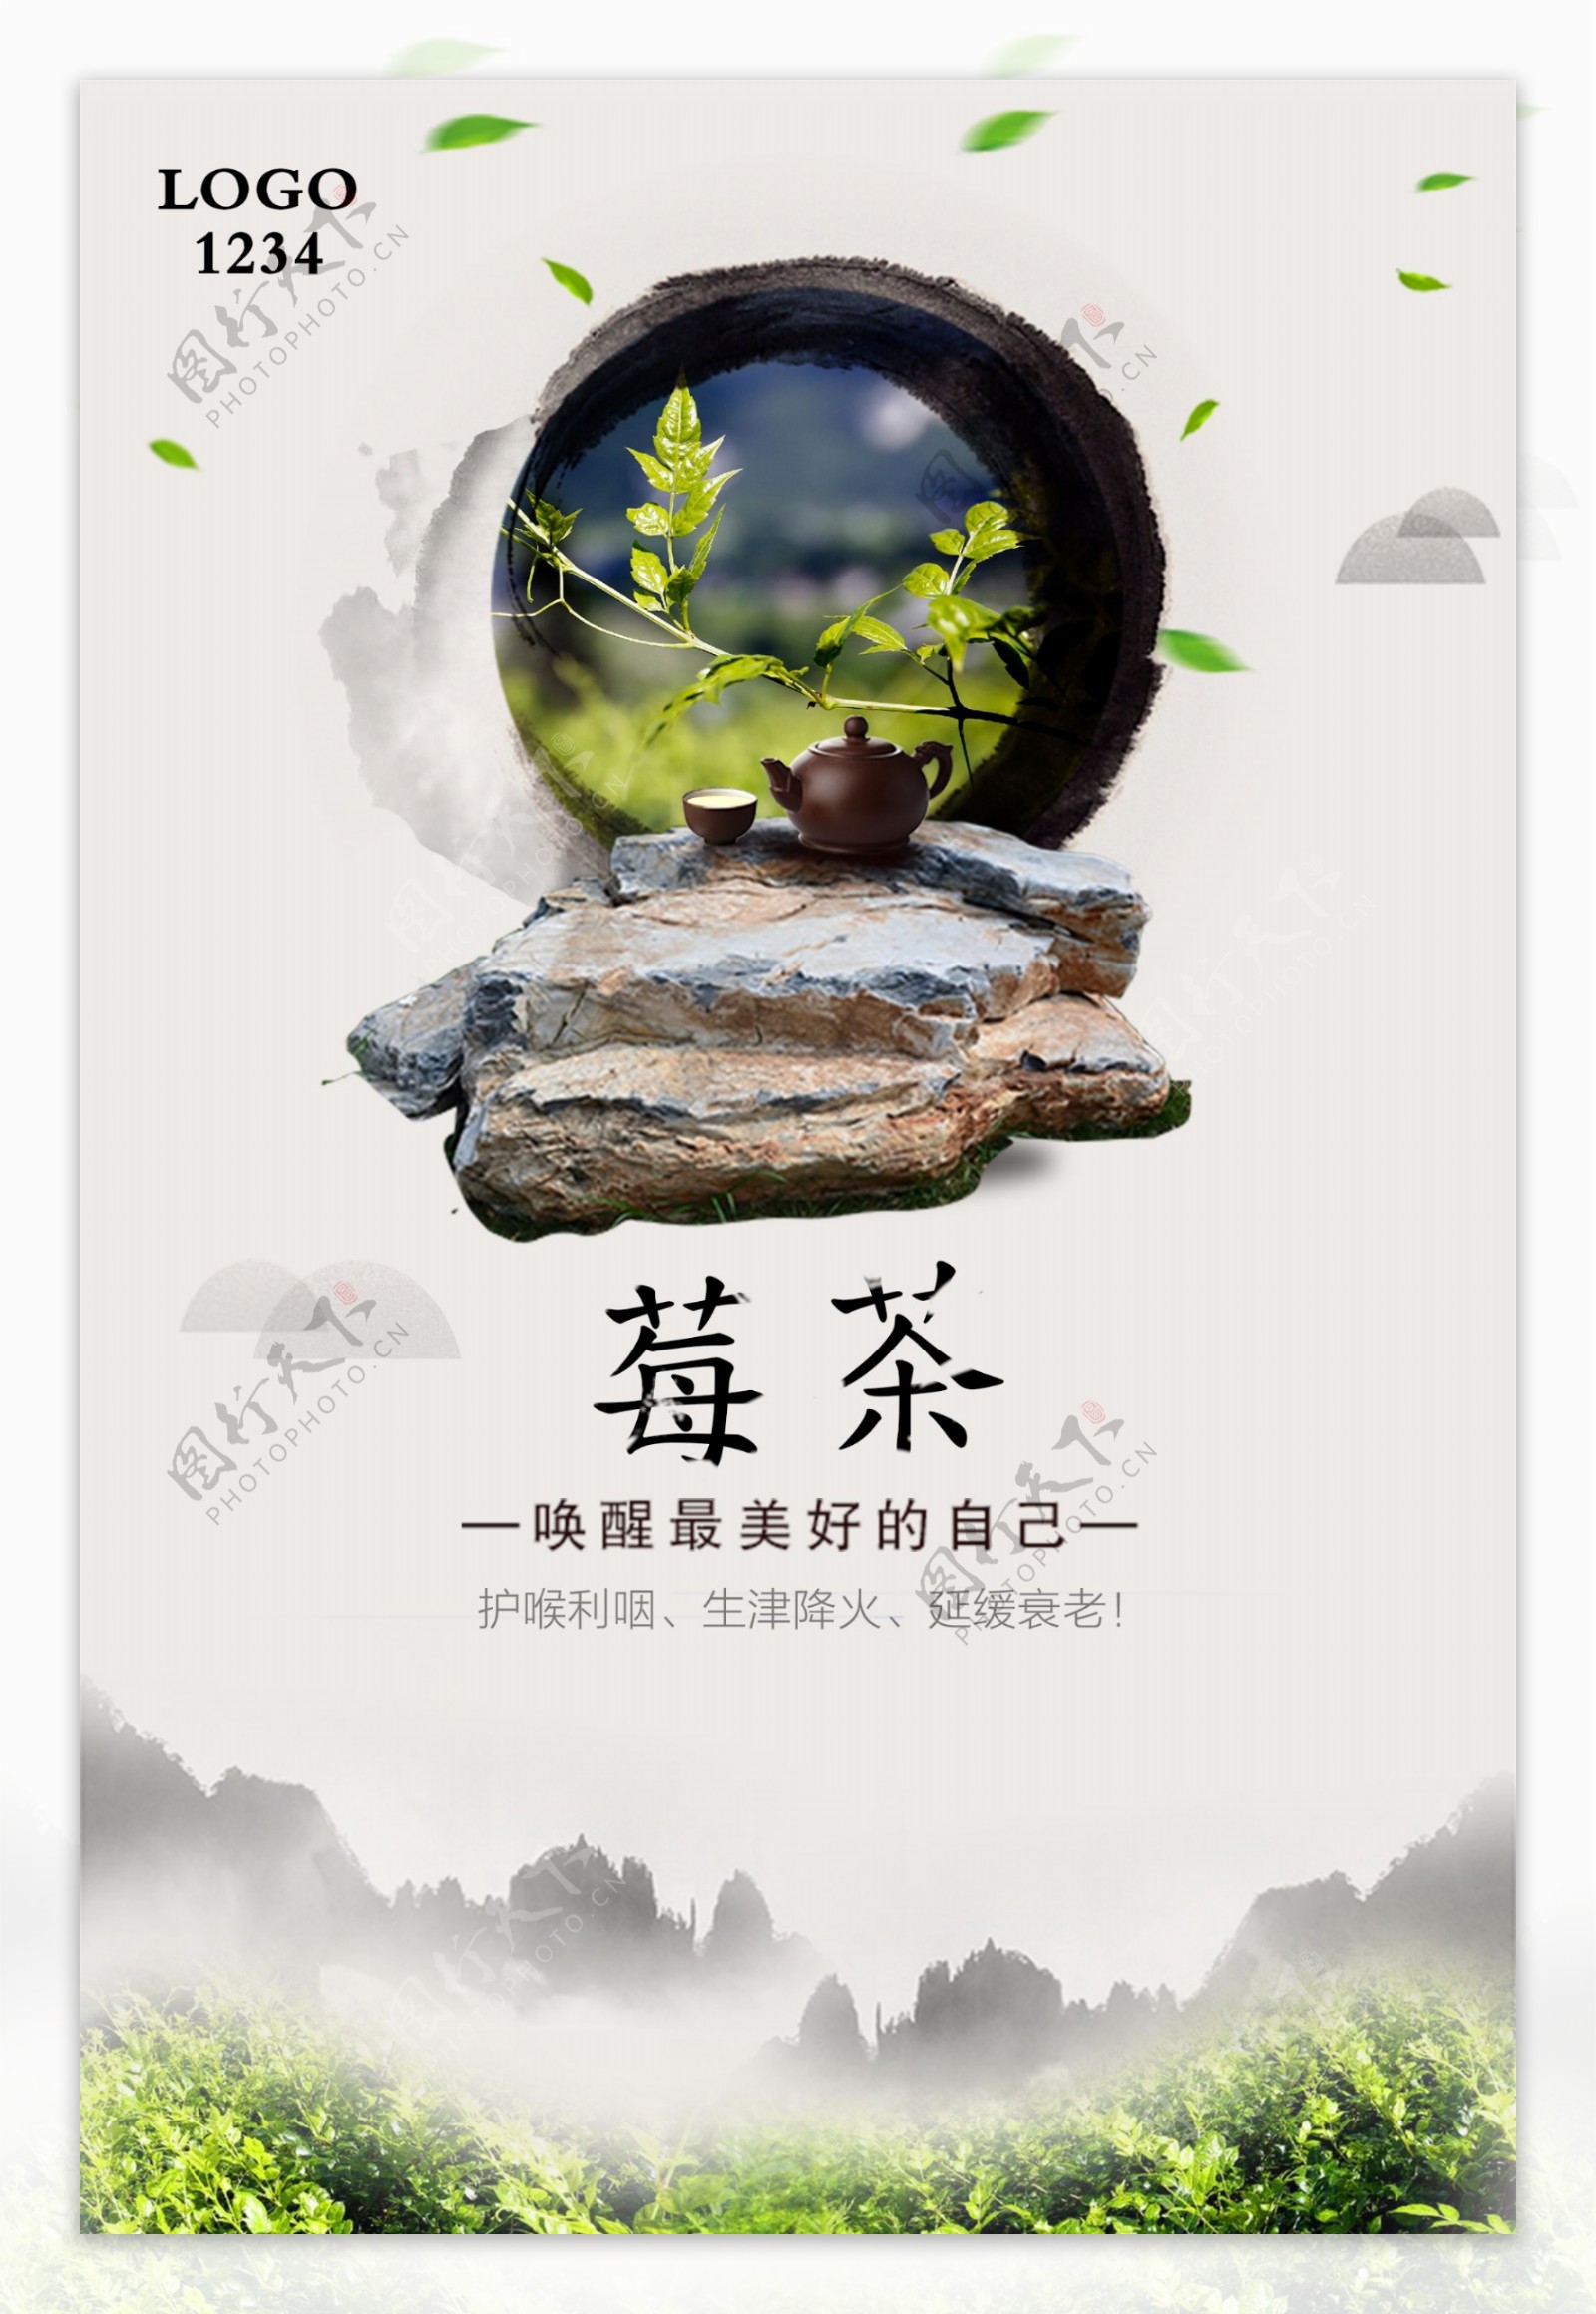 中国风茶类海报